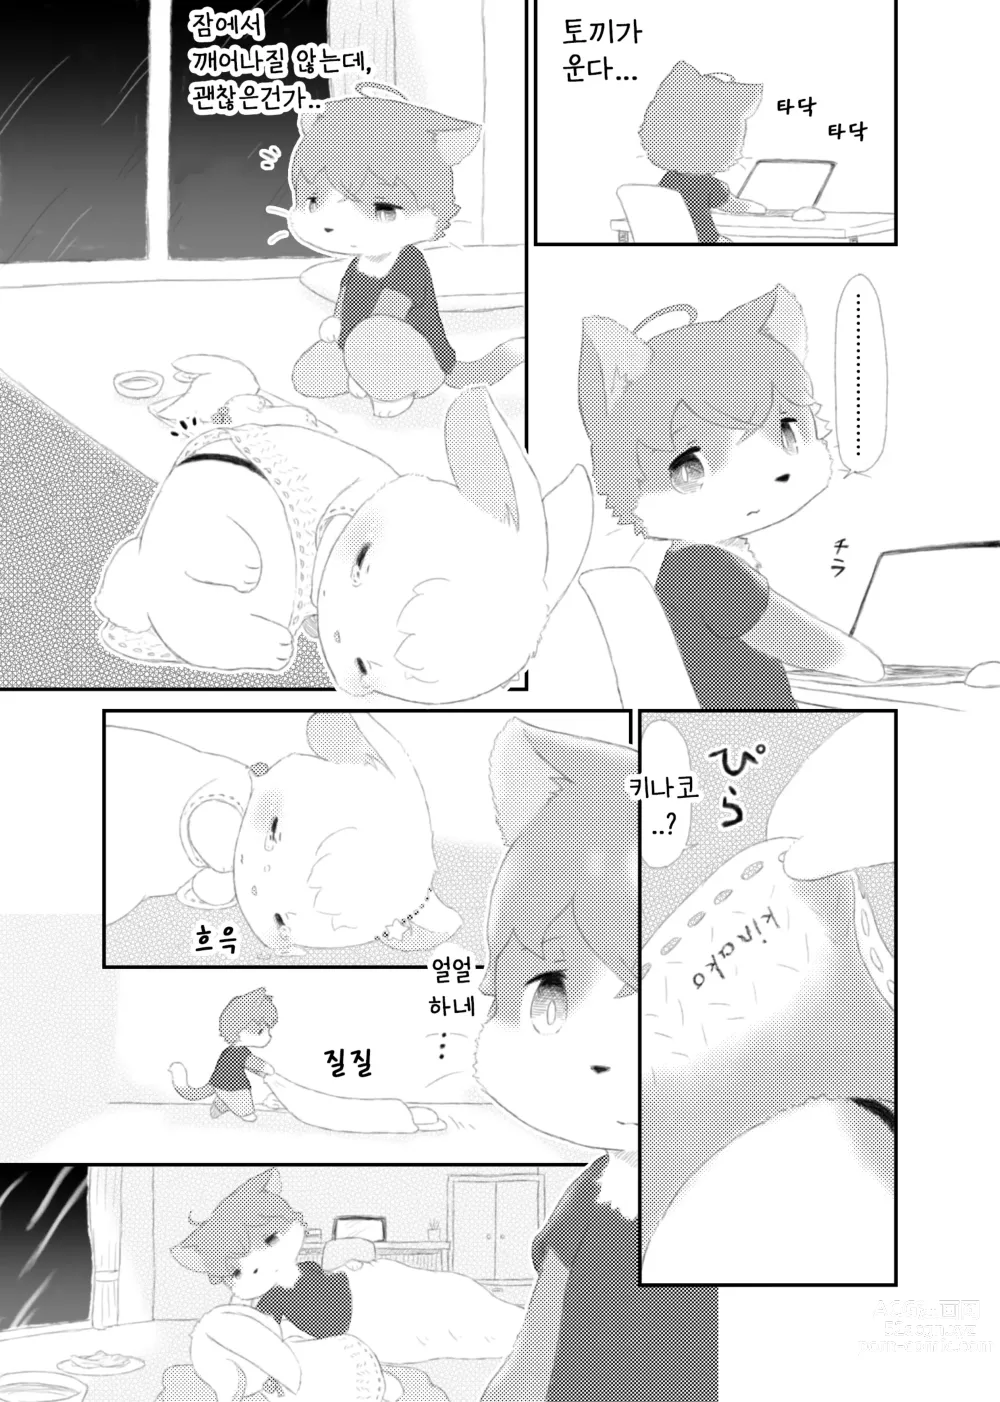 Page 9 of doujinshi 달토끼통신 1화